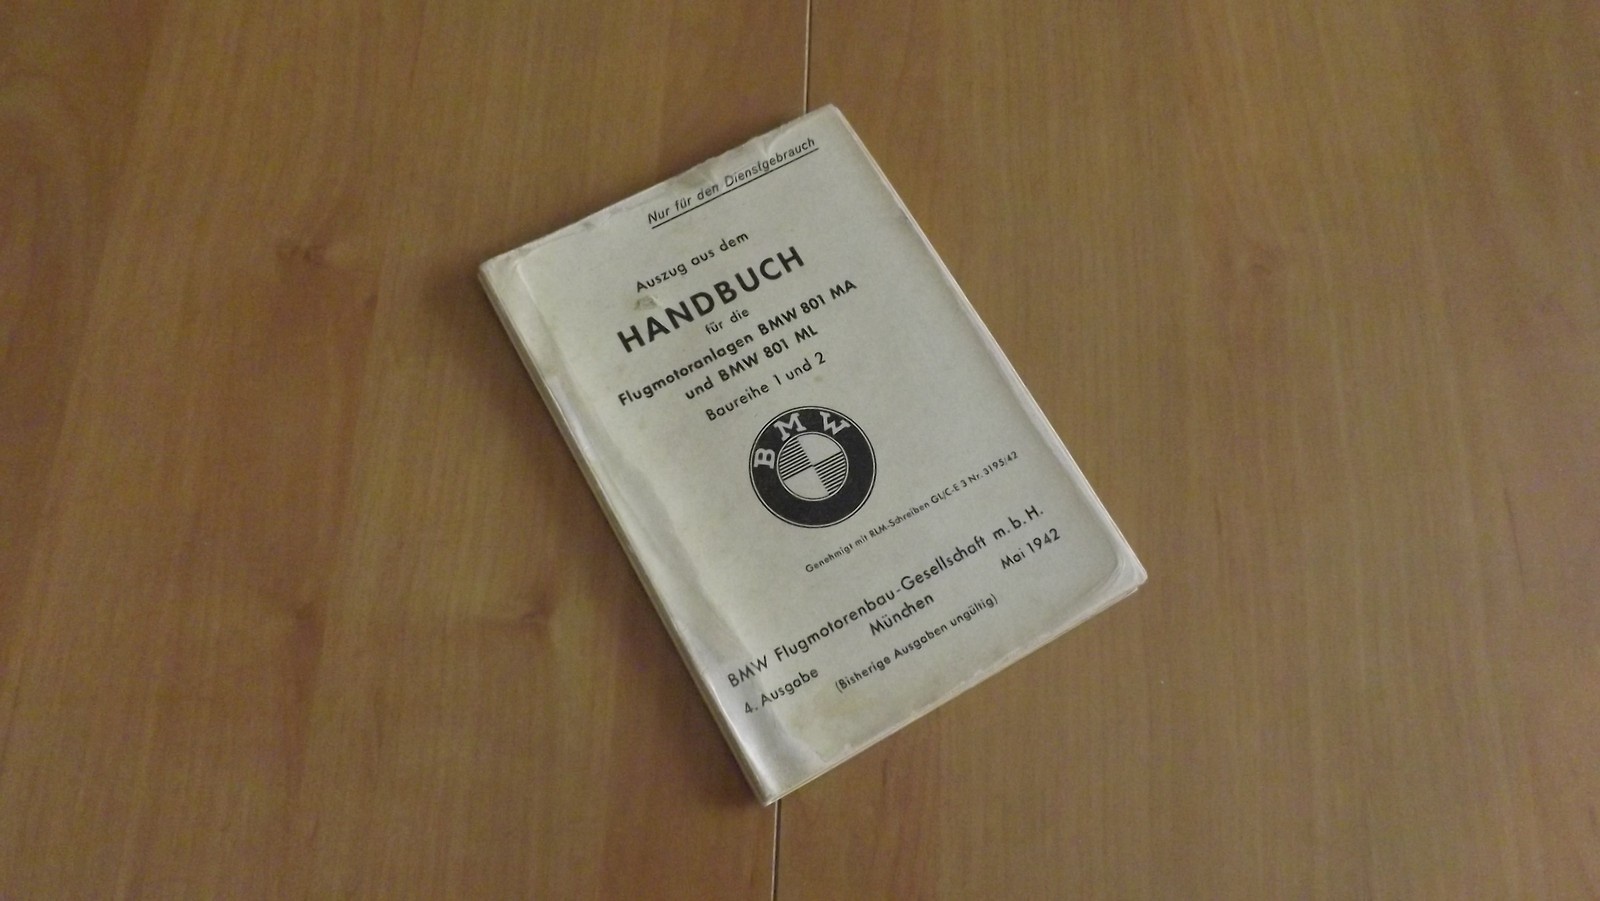 Handbuch für die Flugmotorenanlagen BMW 801 MA und BMW 801 ML (Heimatmuseum Alten CC BY-NC-SA)